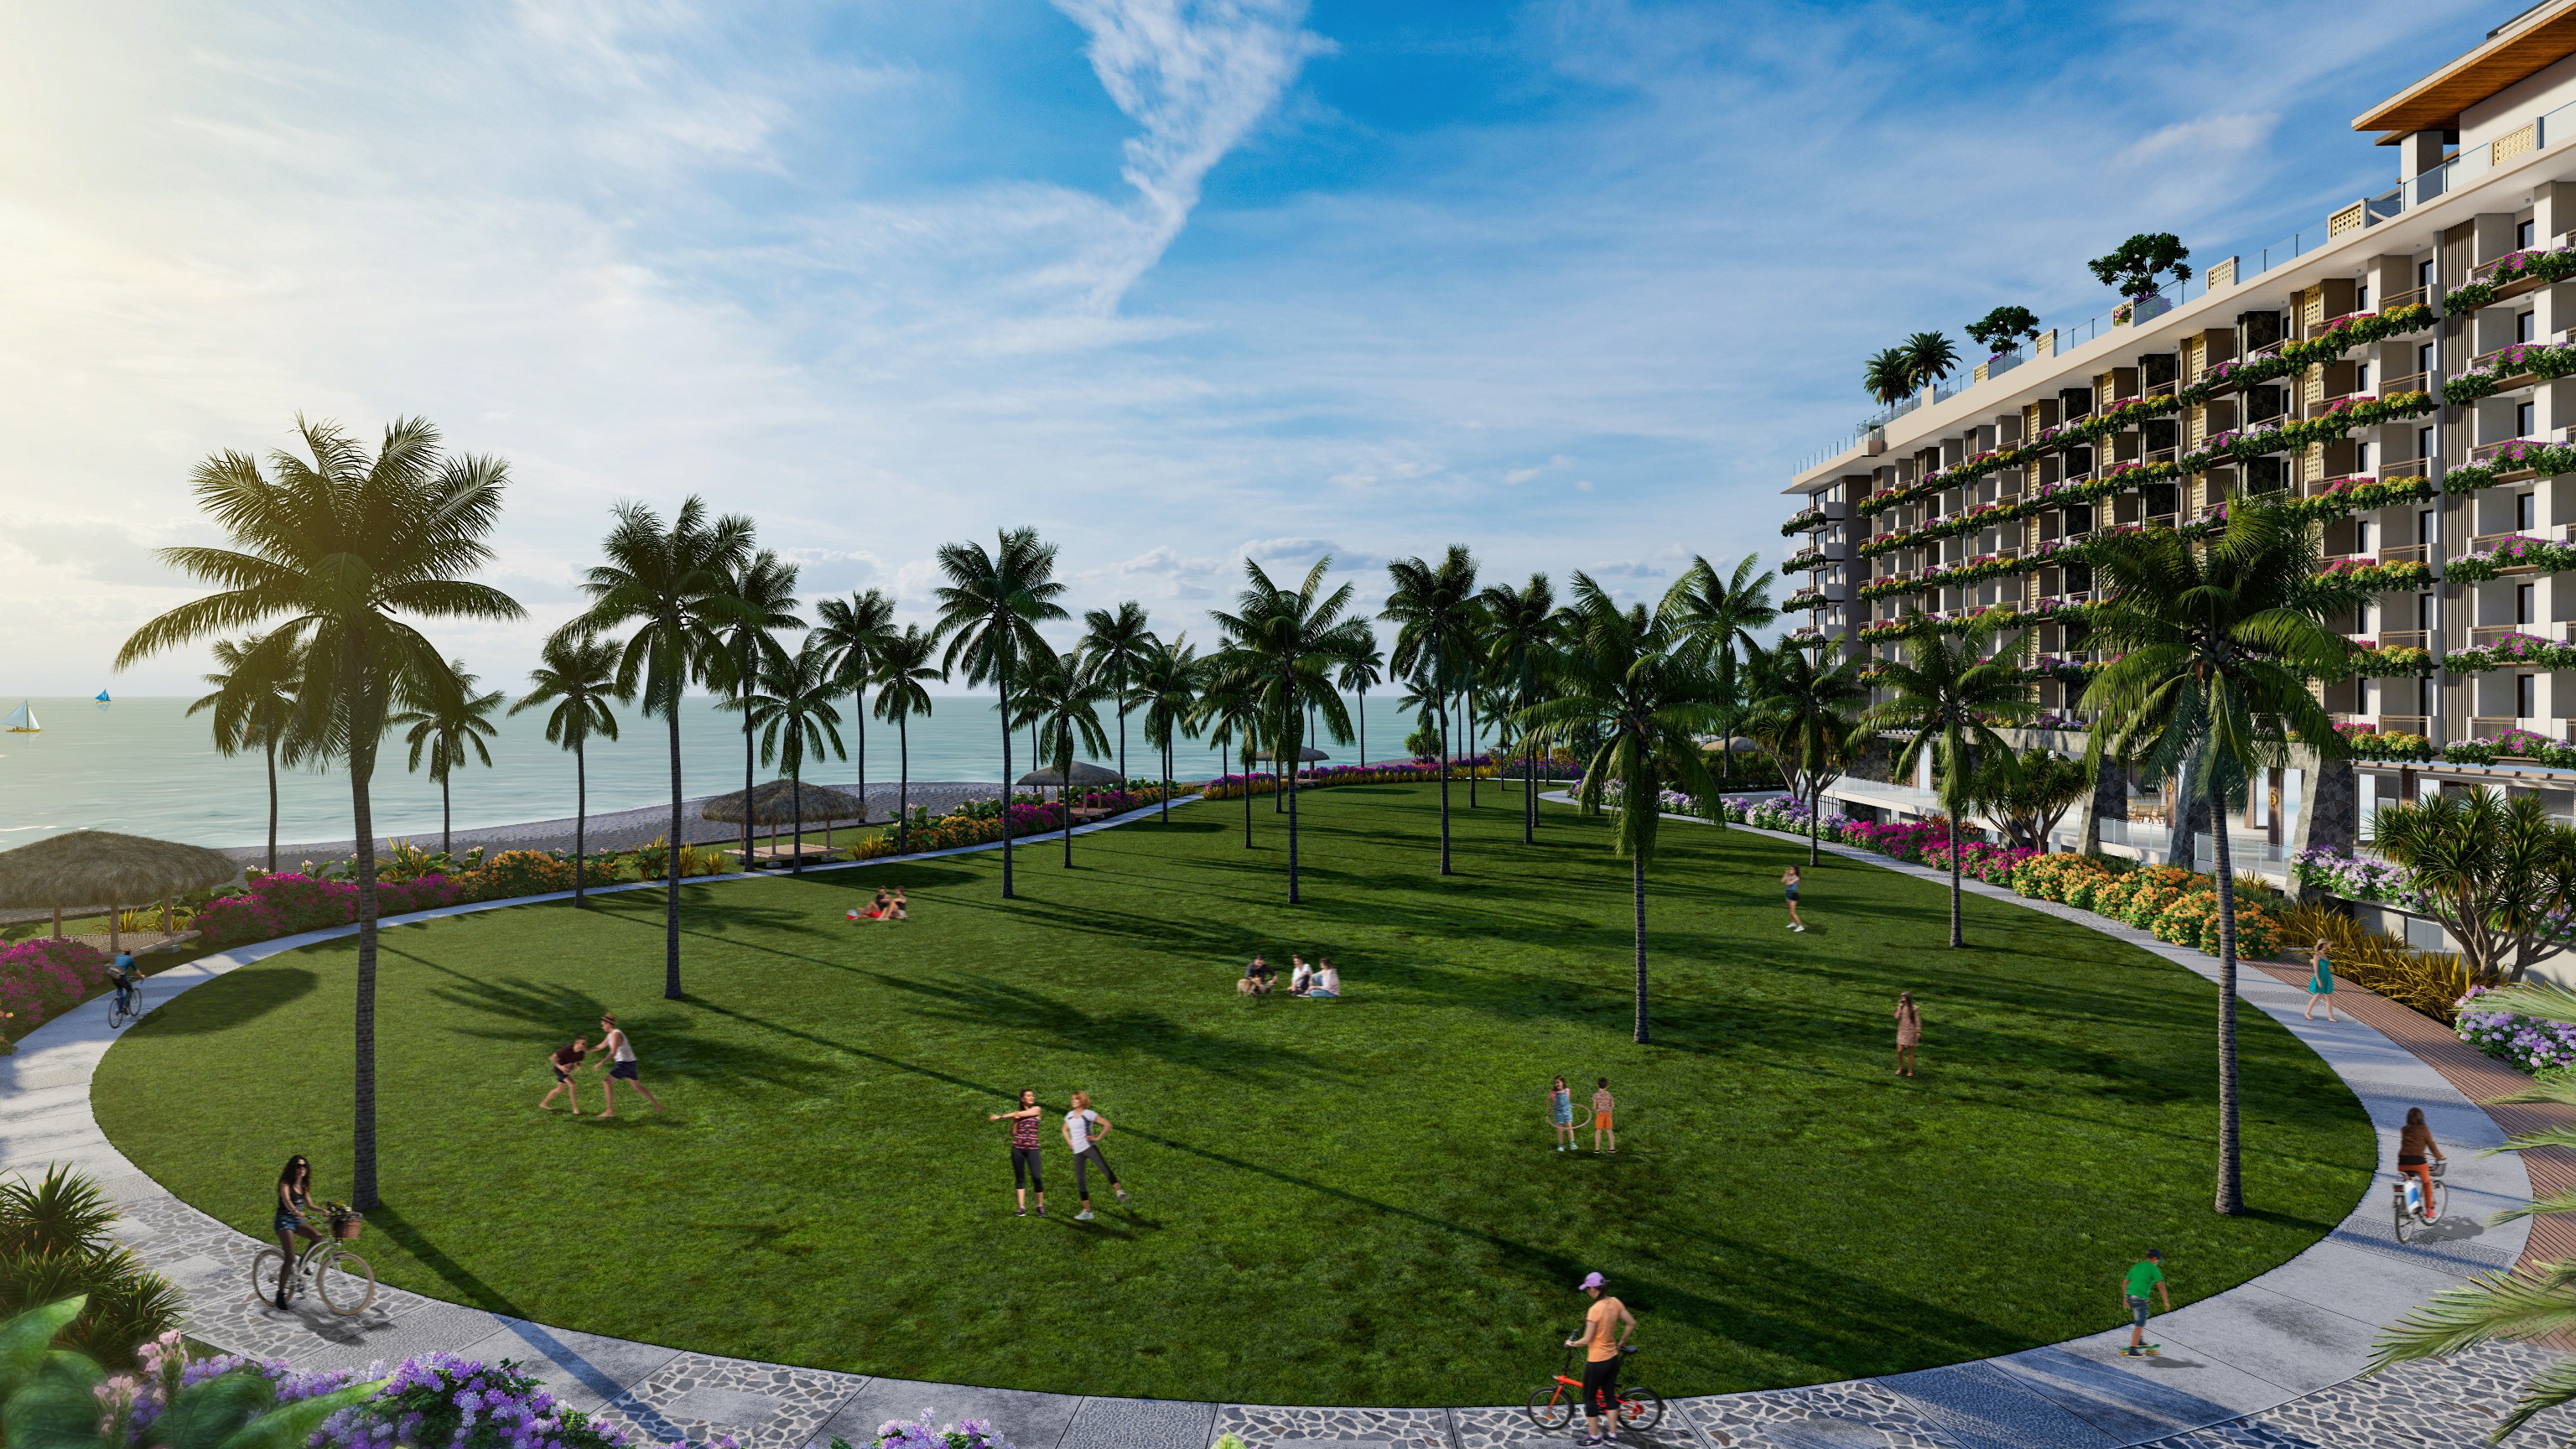 dmci-homes-leisure-brand-launches-new-san-juan-batangas-beach-park-condotel-1692777034389